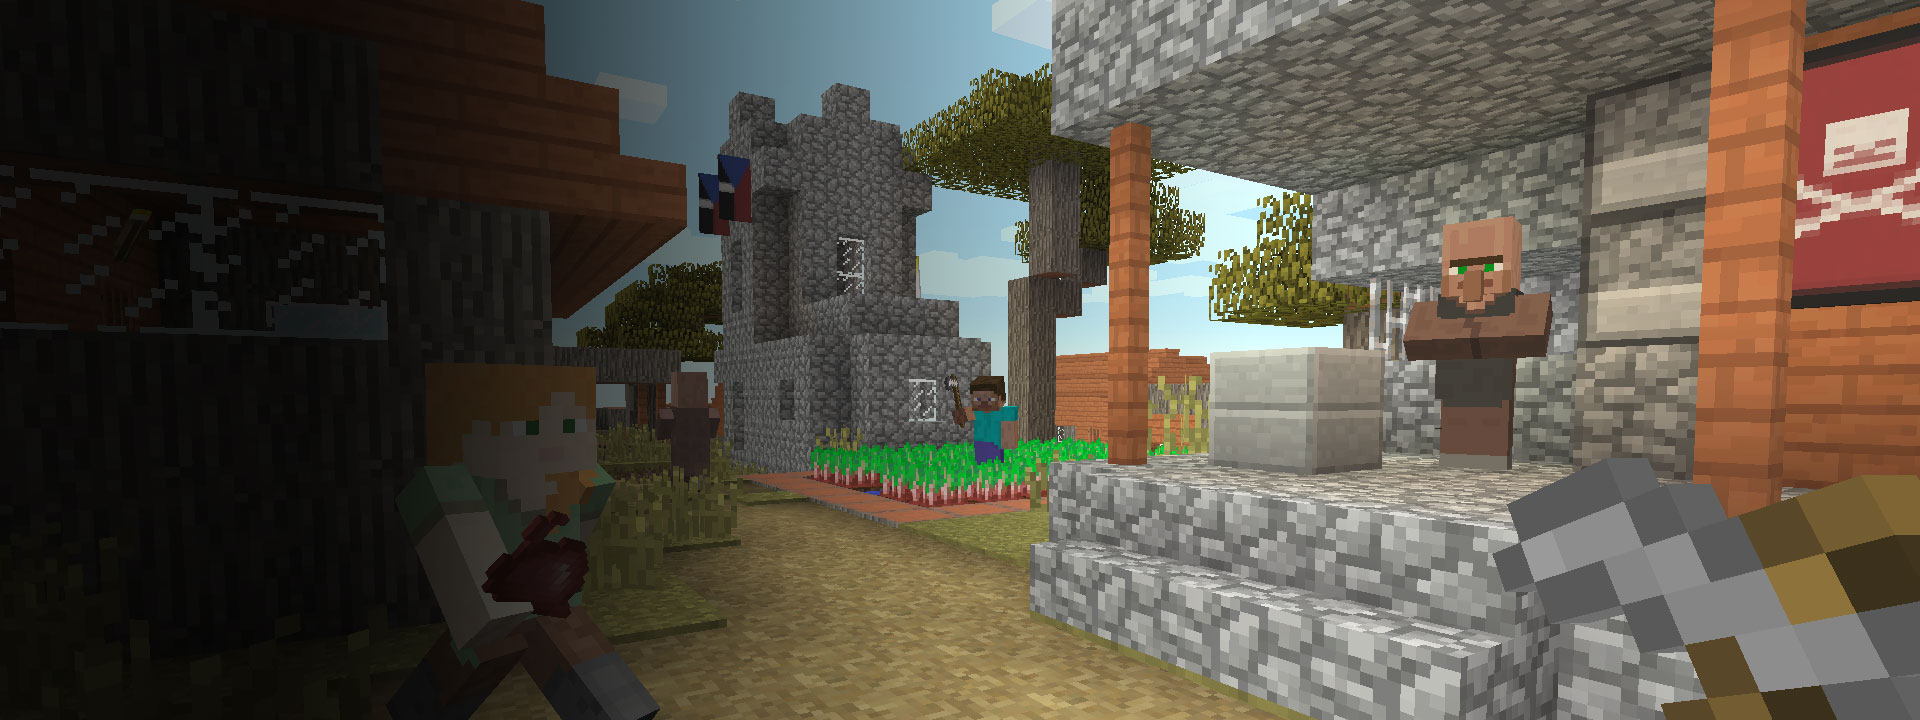 多棟房屋和走到幕前的 Minecraft 角色。